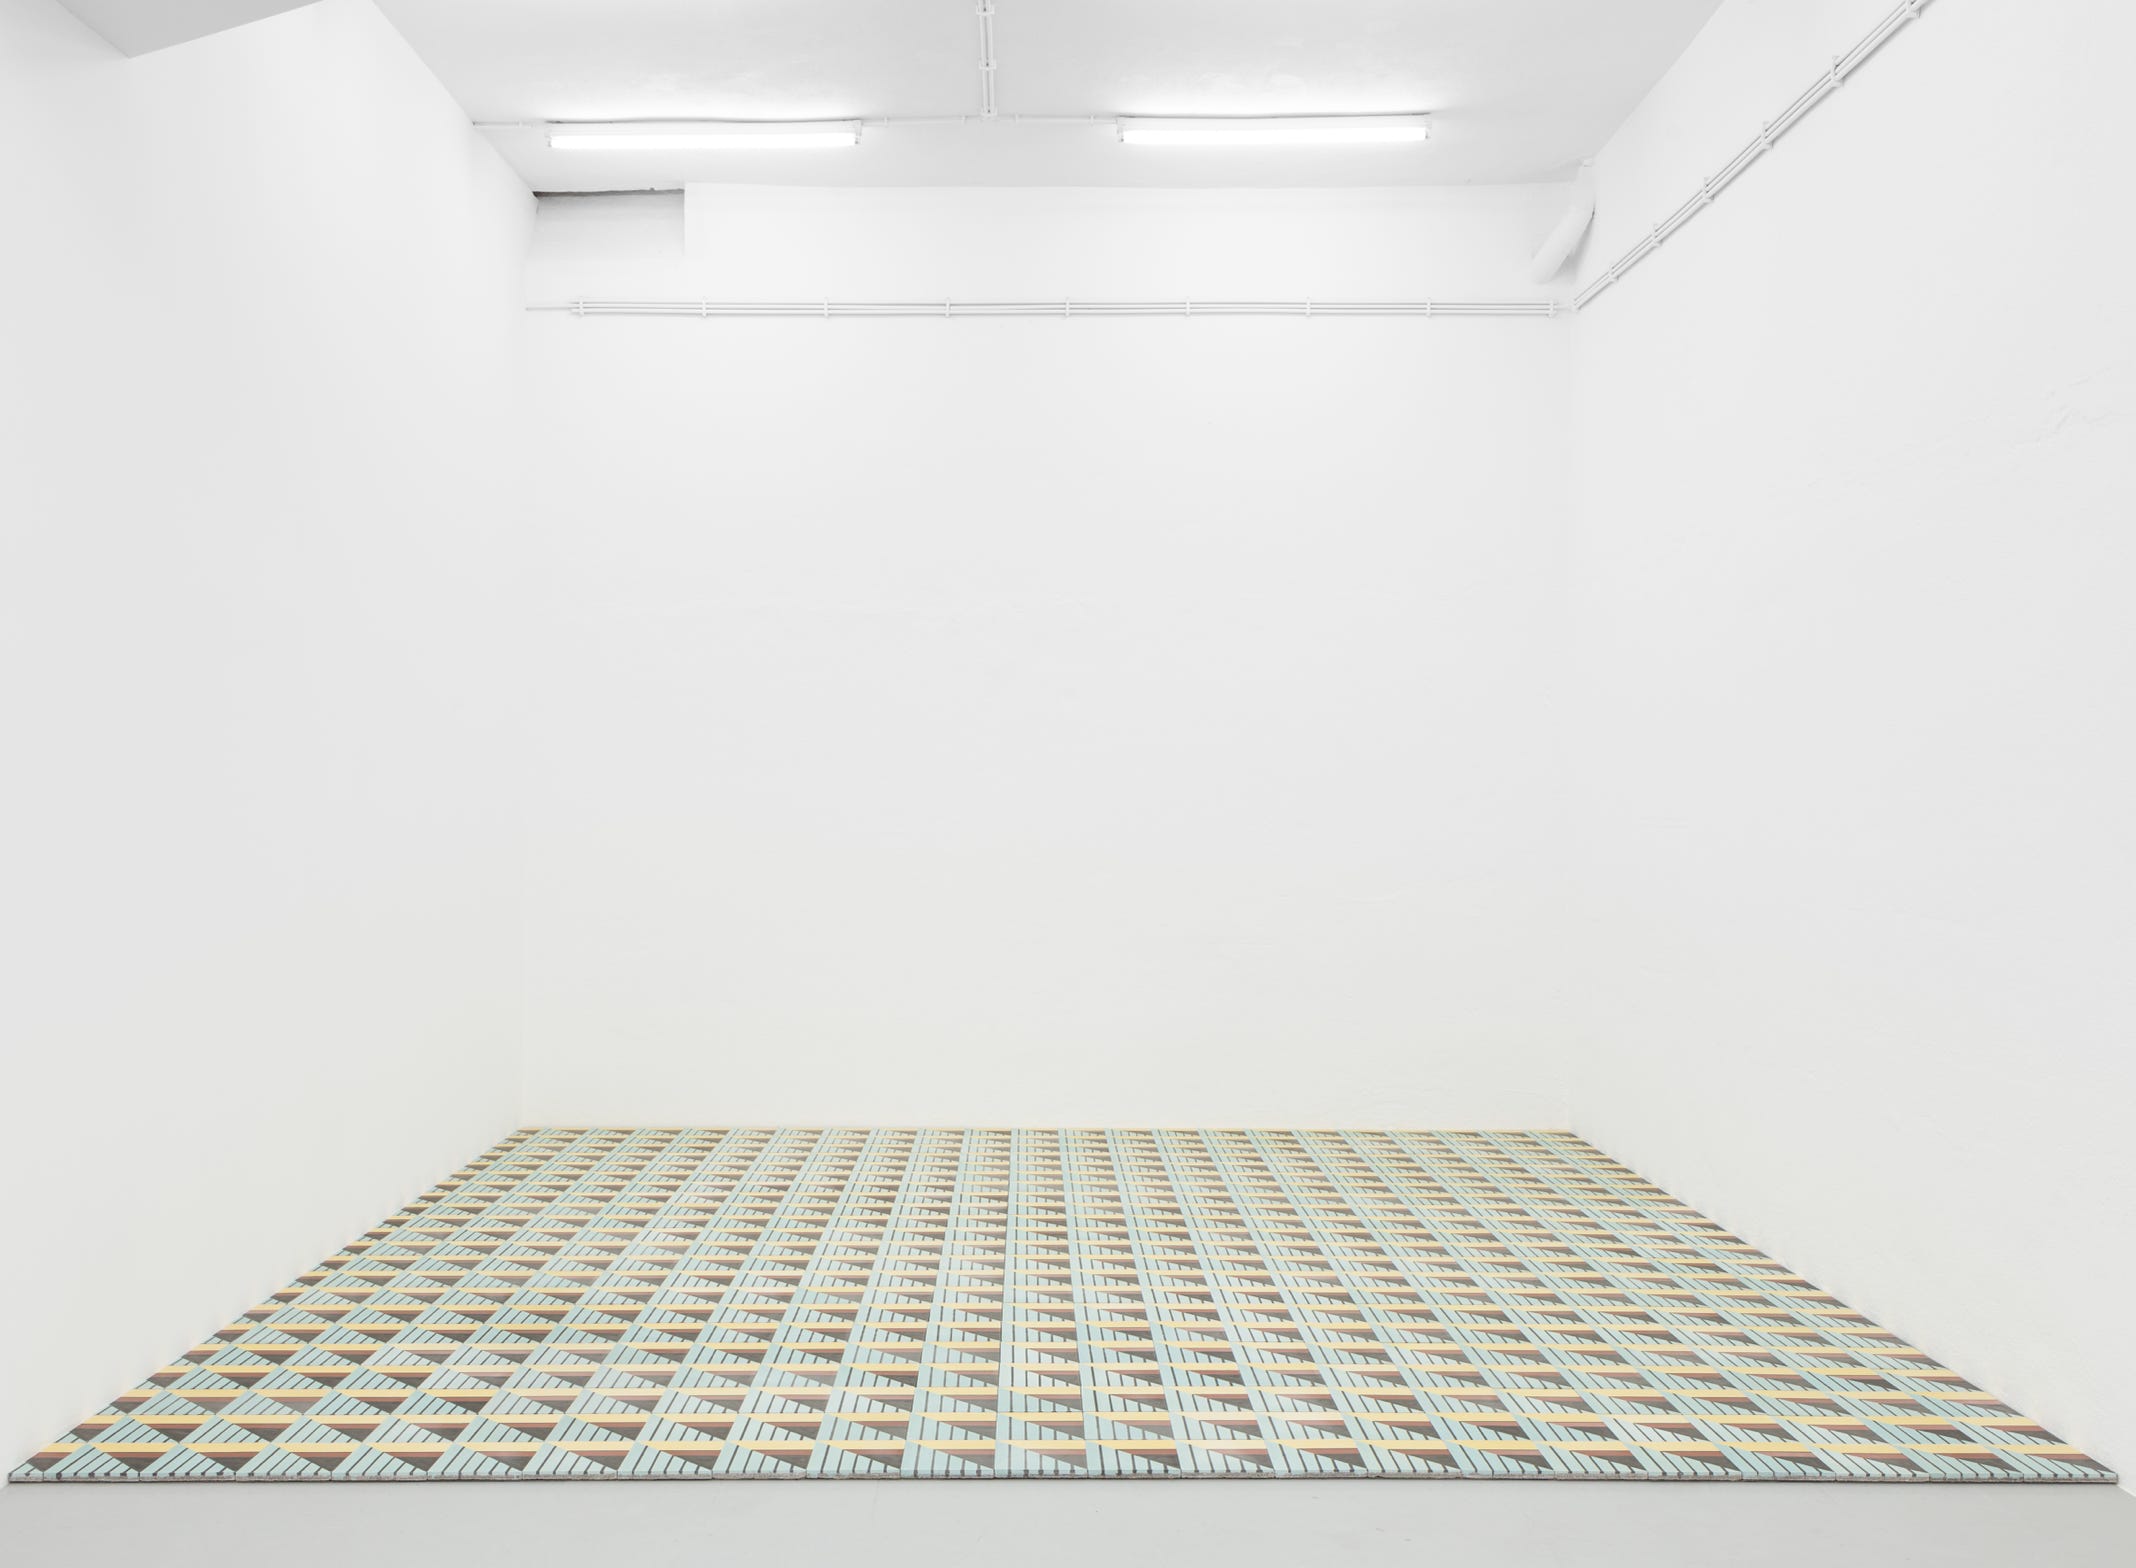 O mosaico hidráulico padrão "Engel" da Projecto Mosaico integrado na instalação Piso, 2018 da exposição na Kunsthalle Lissabon da autoria do artista Leonardo Engel